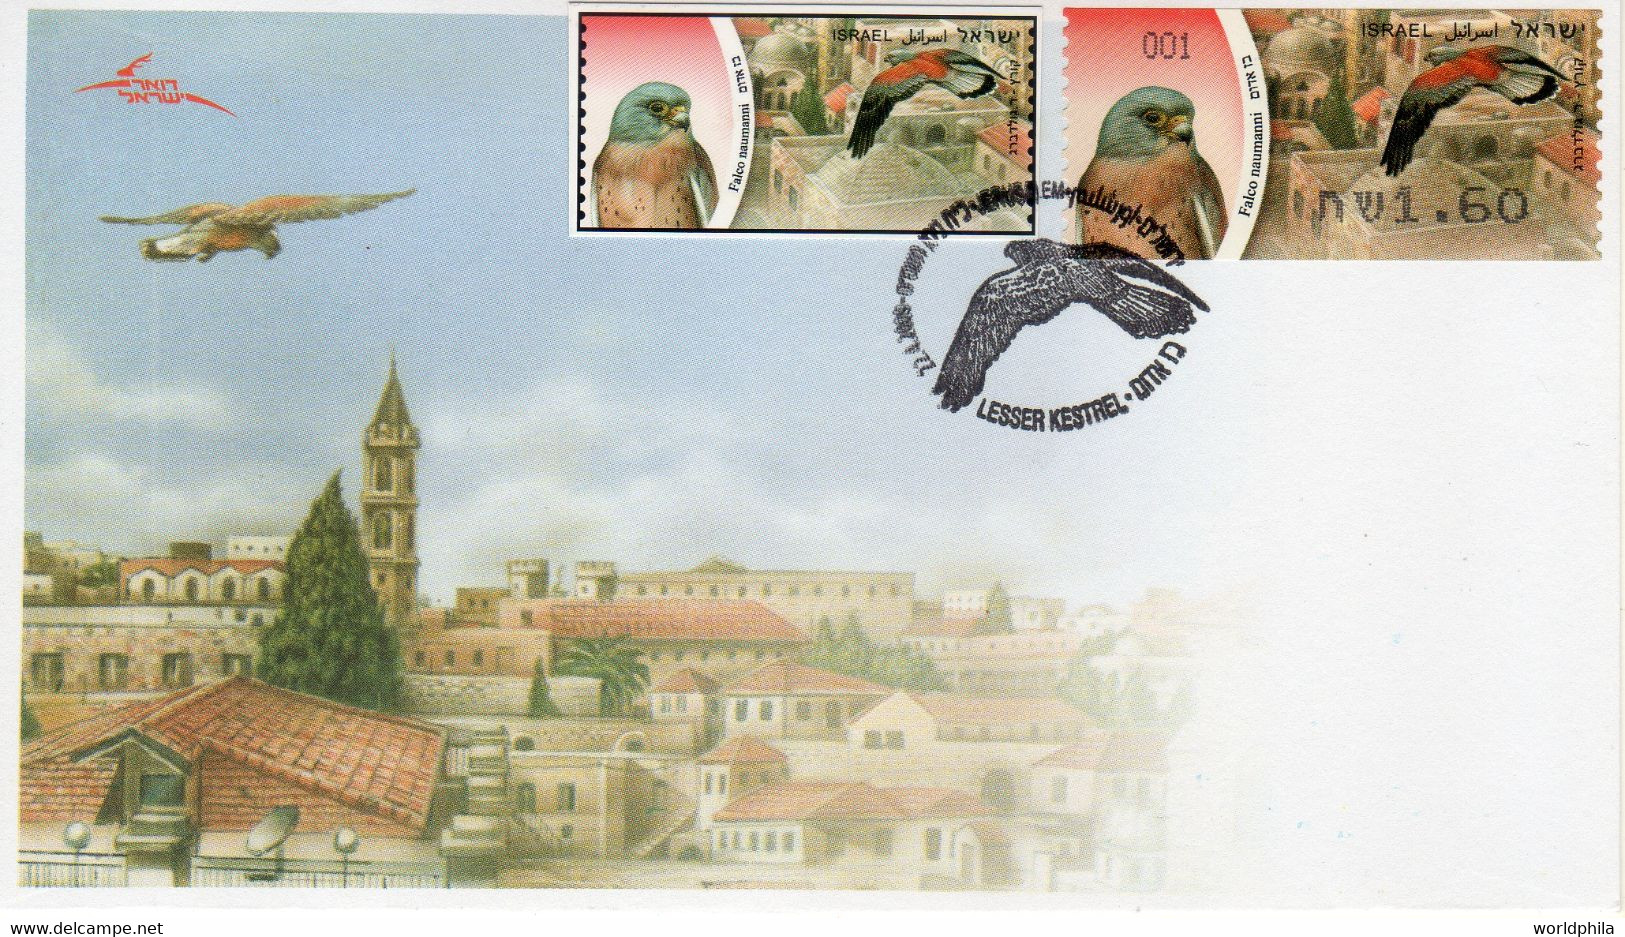 Israel 2009 Extremely Rare Falco Hanmahni Bird, ATM Stamp, Designer Photo Proof, Essay+regular FDC 9 - Sin Dentar, Pruebas De Impresión Y Variedades